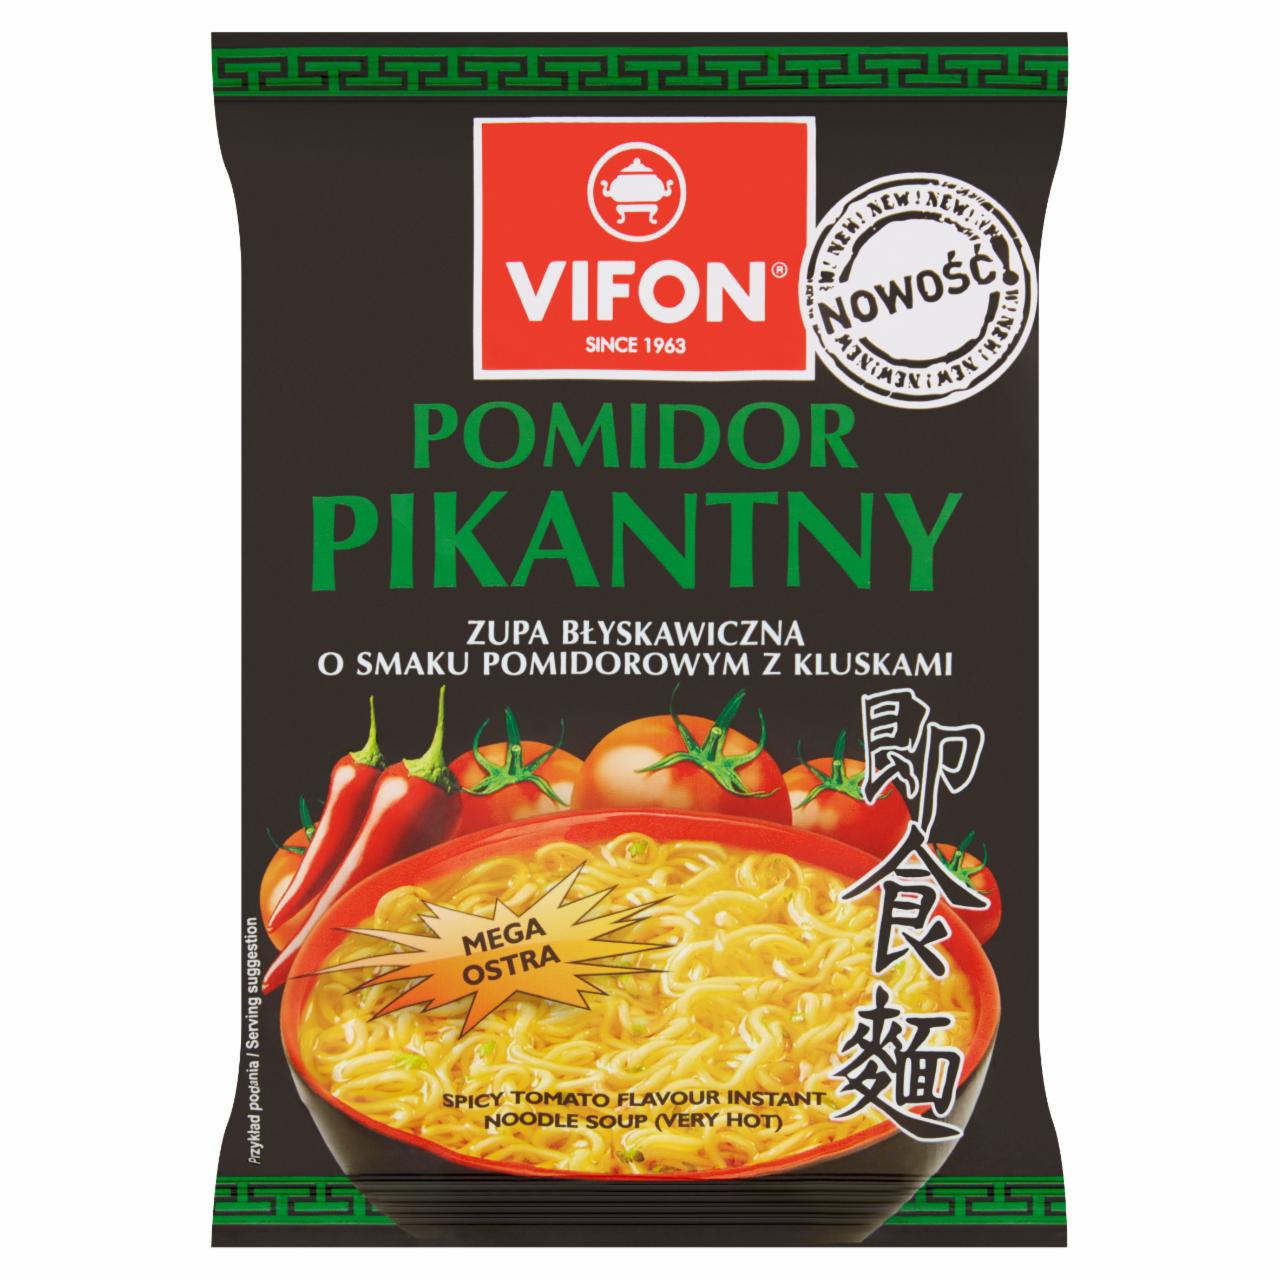 Zdjęcia - Zupa błyskawiczna z chili pomidor pikantny 70 g Vifon